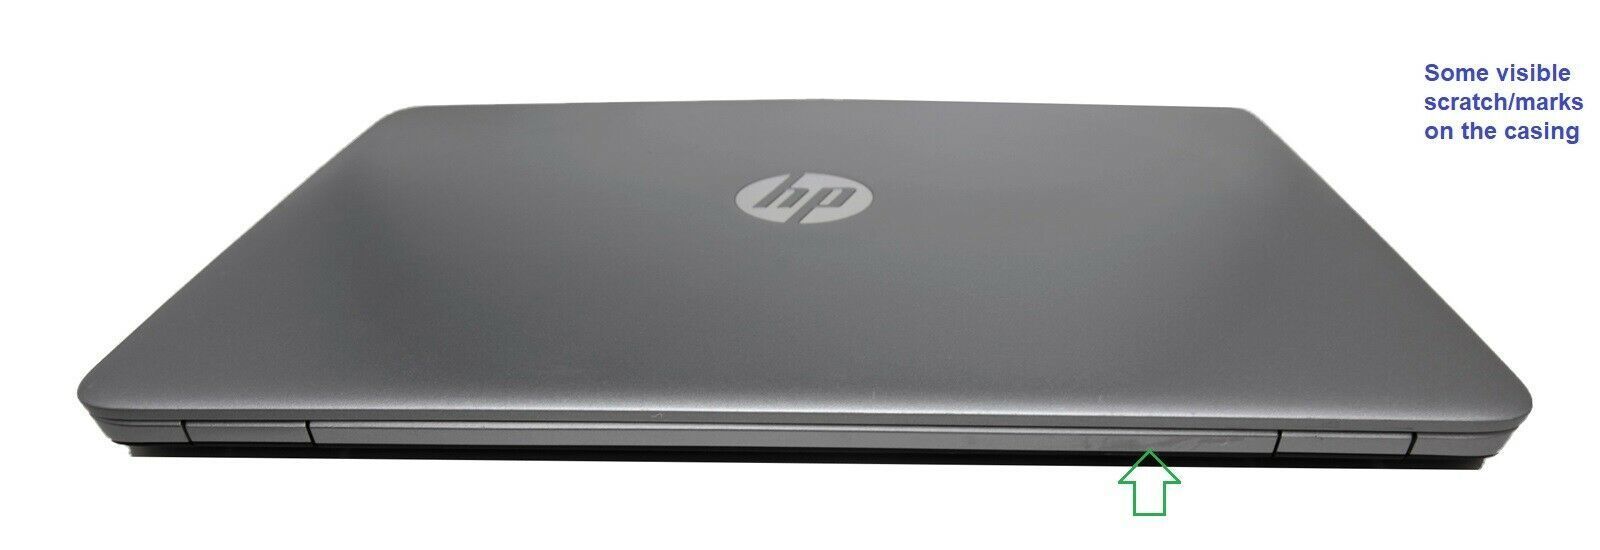 HP EliteBook 840 G3 FHD UltraBook: 8GB RAM, 500GB HDD, Warranty - CruiseTech